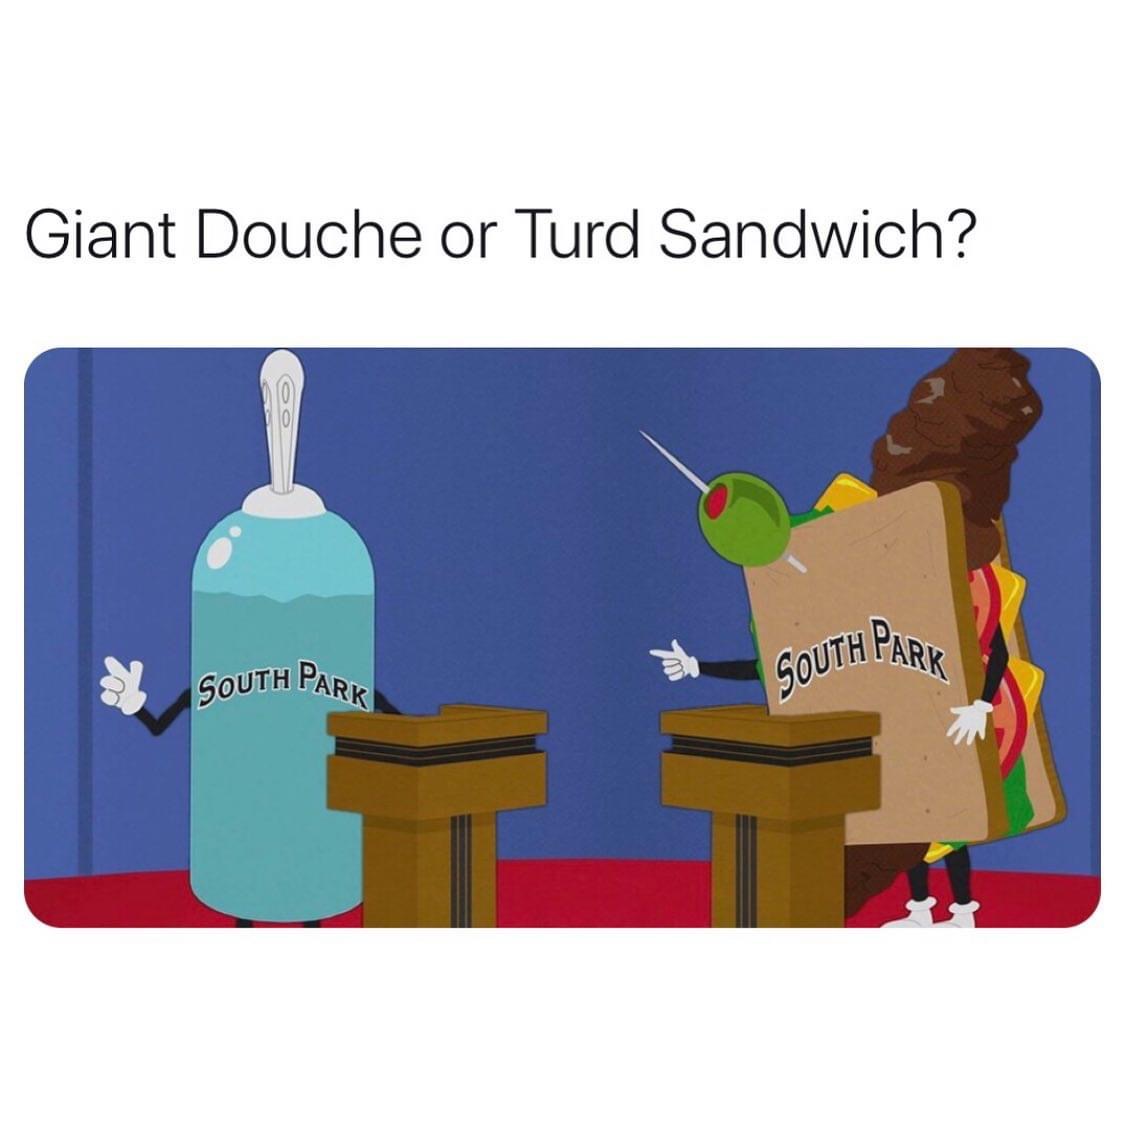 turd sandwich - Giant Douche or Turd Sandwich? South Park South Park